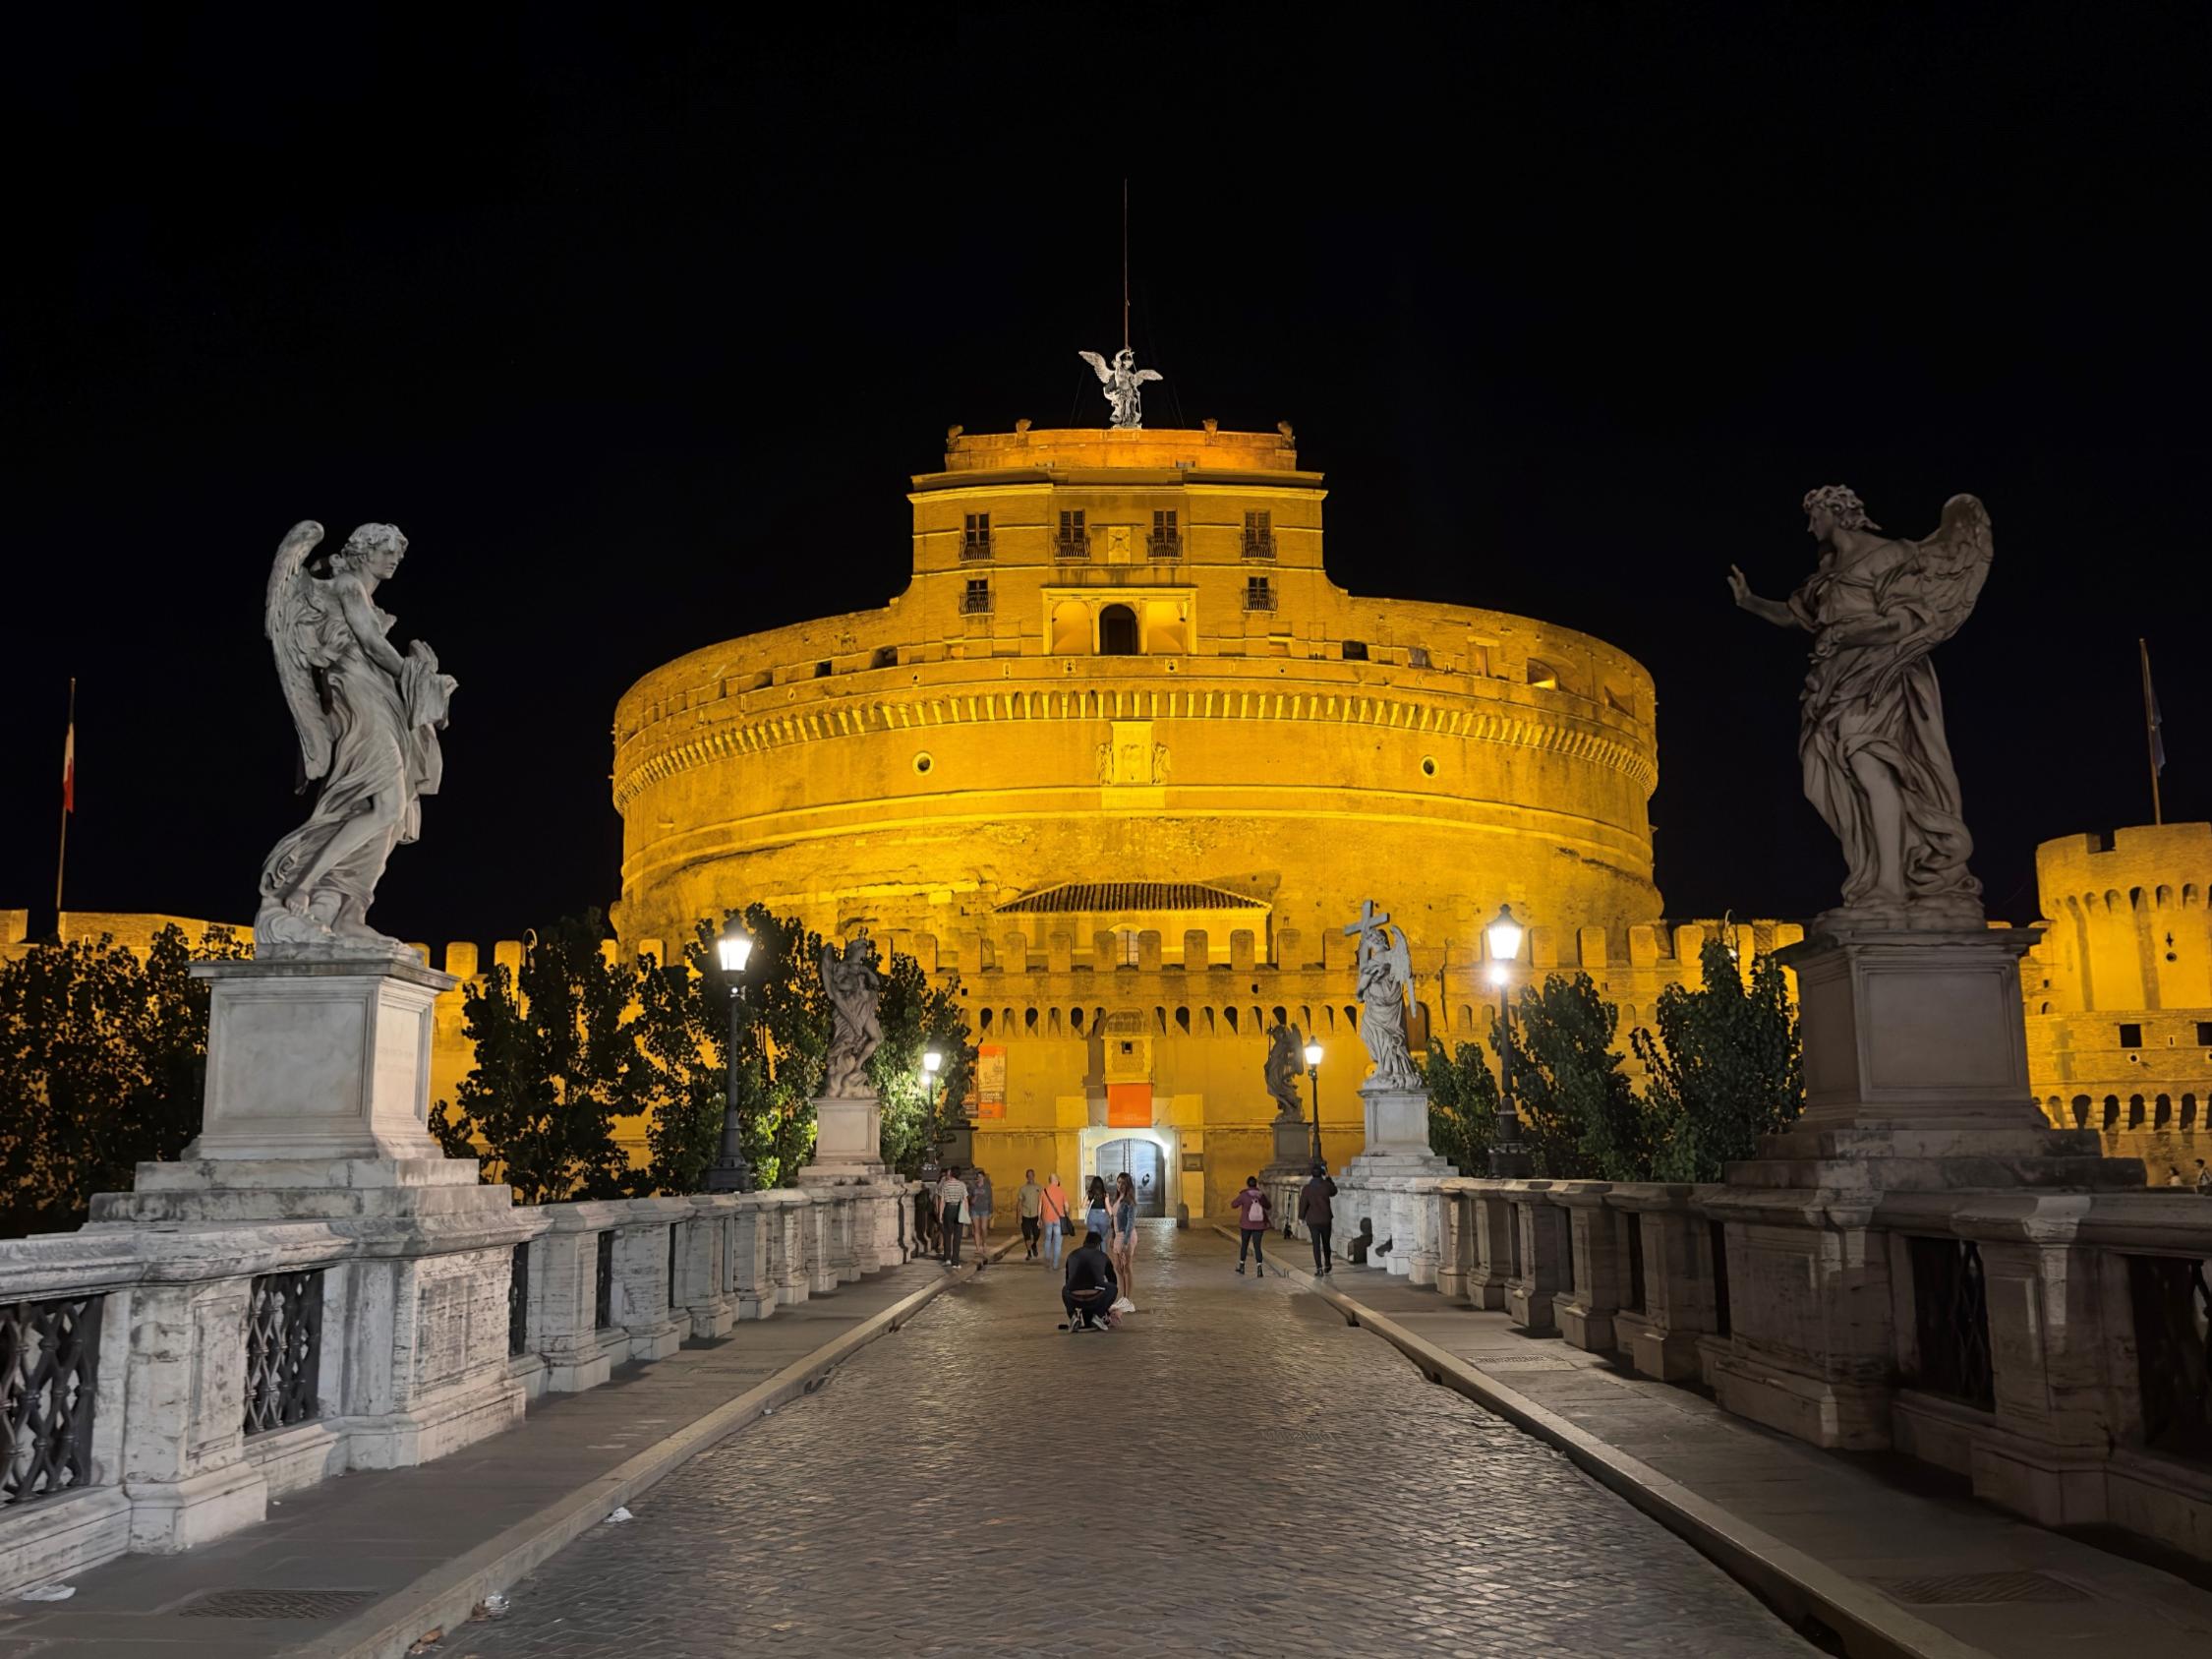 Engelsburg in Rom bei Nacht